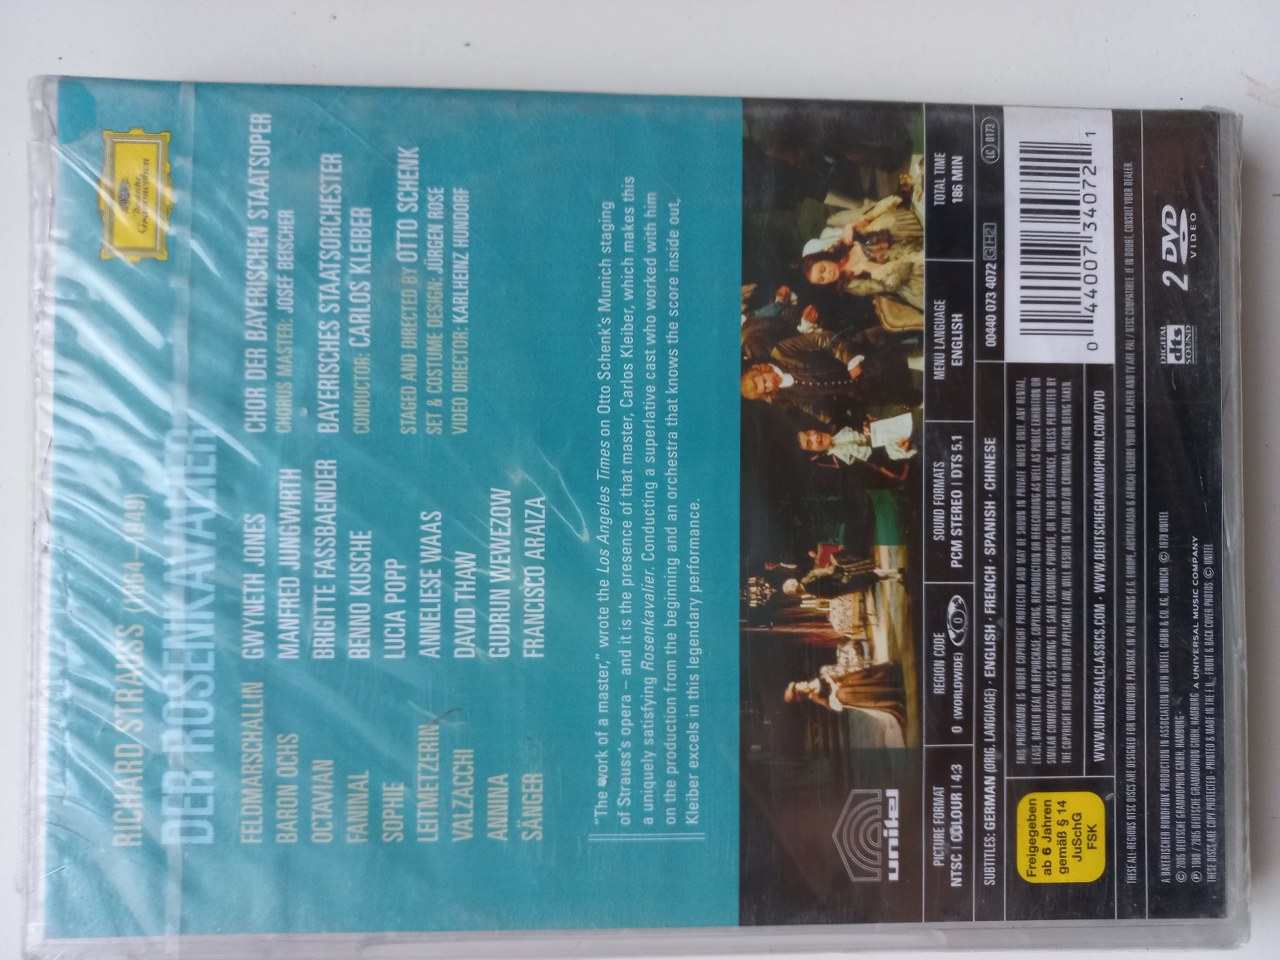 044007340721 Der Rosenkavalier - Bayerisches Staatsoper (Kleiber) Product Key Features DVD 2005